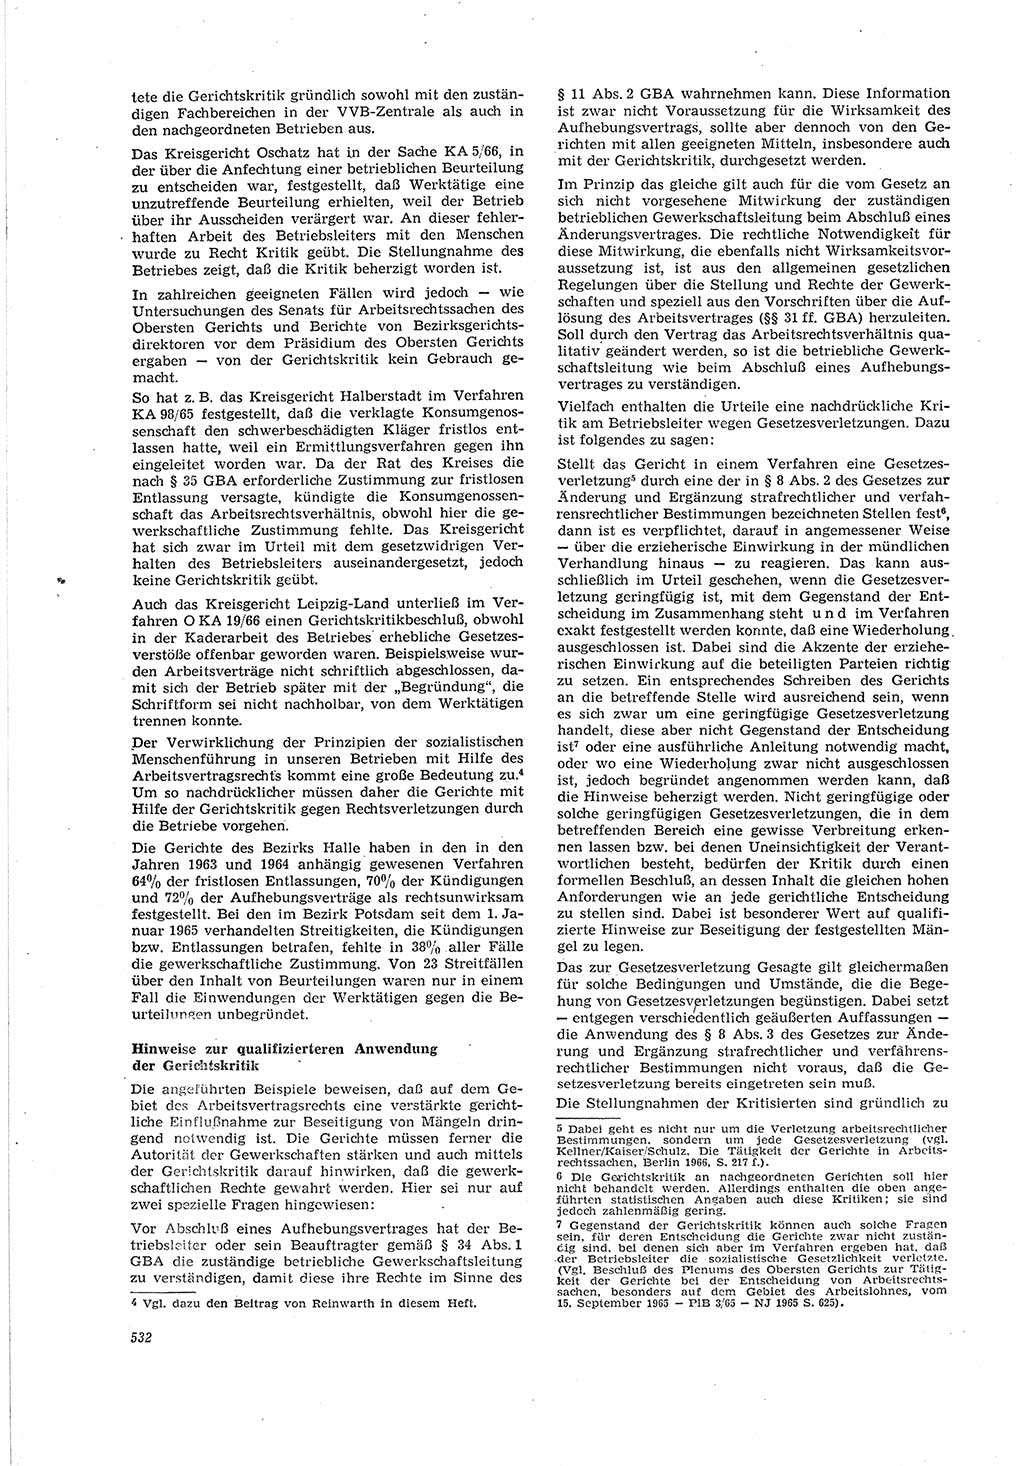 Neue Justiz (NJ), Zeitschrift für Recht und Rechtswissenschaft [Deutsche Demokratische Republik (DDR)], 20. Jahrgang 1966, Seite 532 (NJ DDR 1966, S. 532)